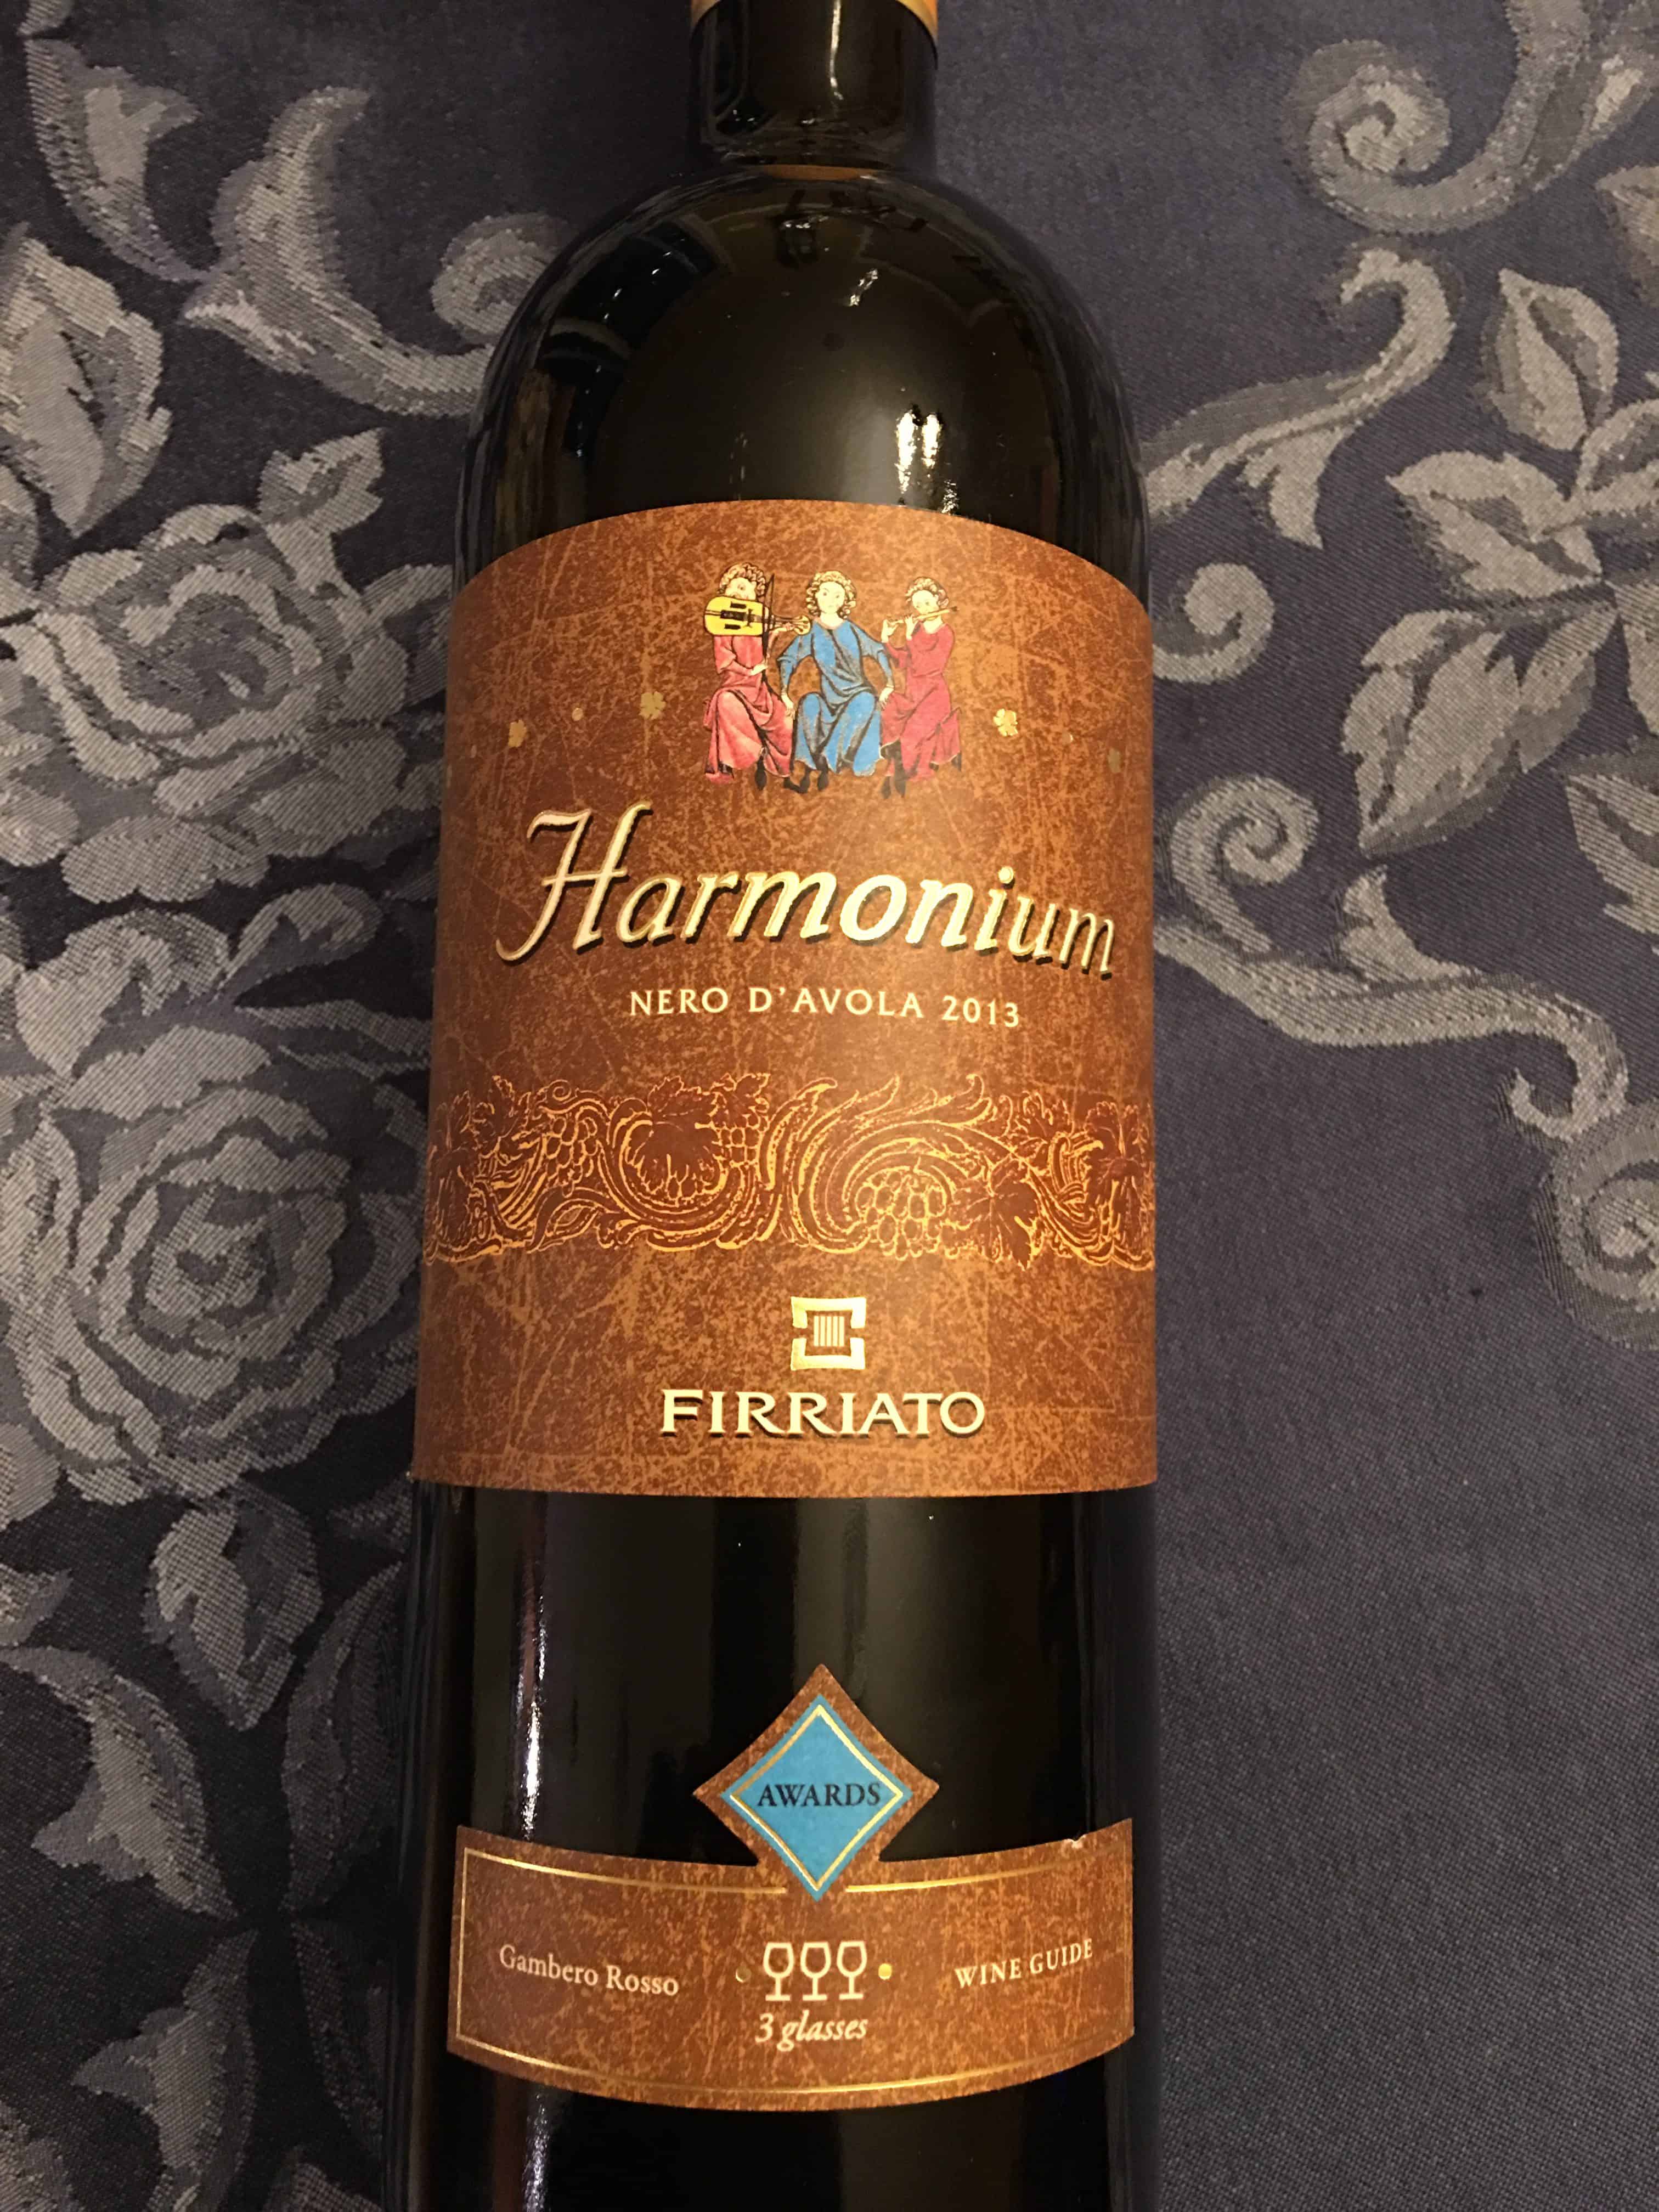 Harmonium Nero D'Avola 2013 wine